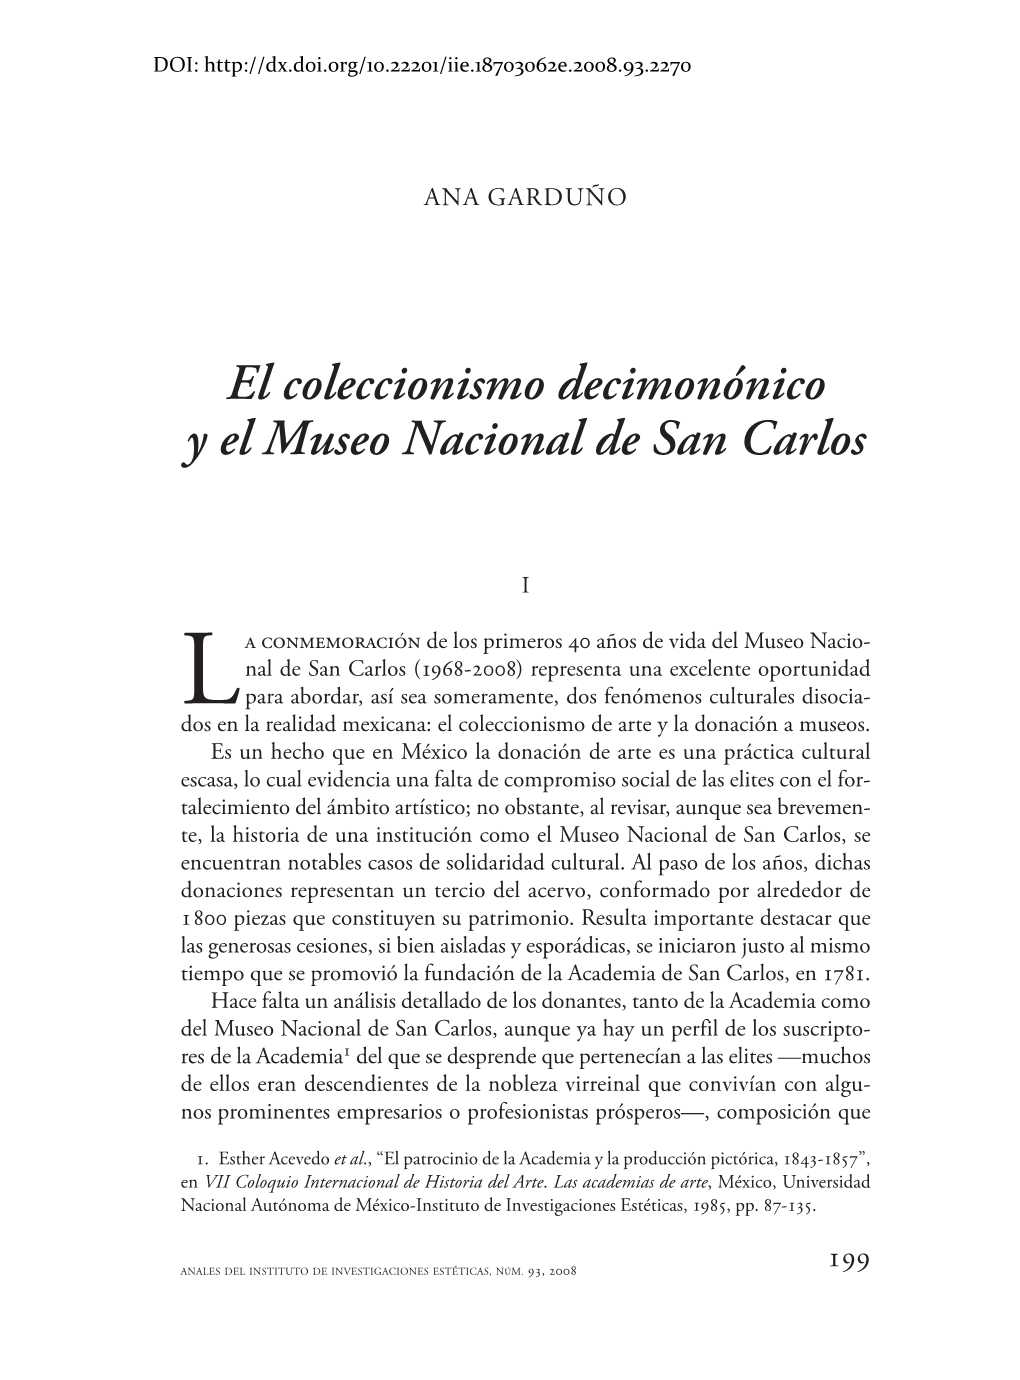 El Coleccionismo Decimonónico Y El Museo Nacional De San Carlos